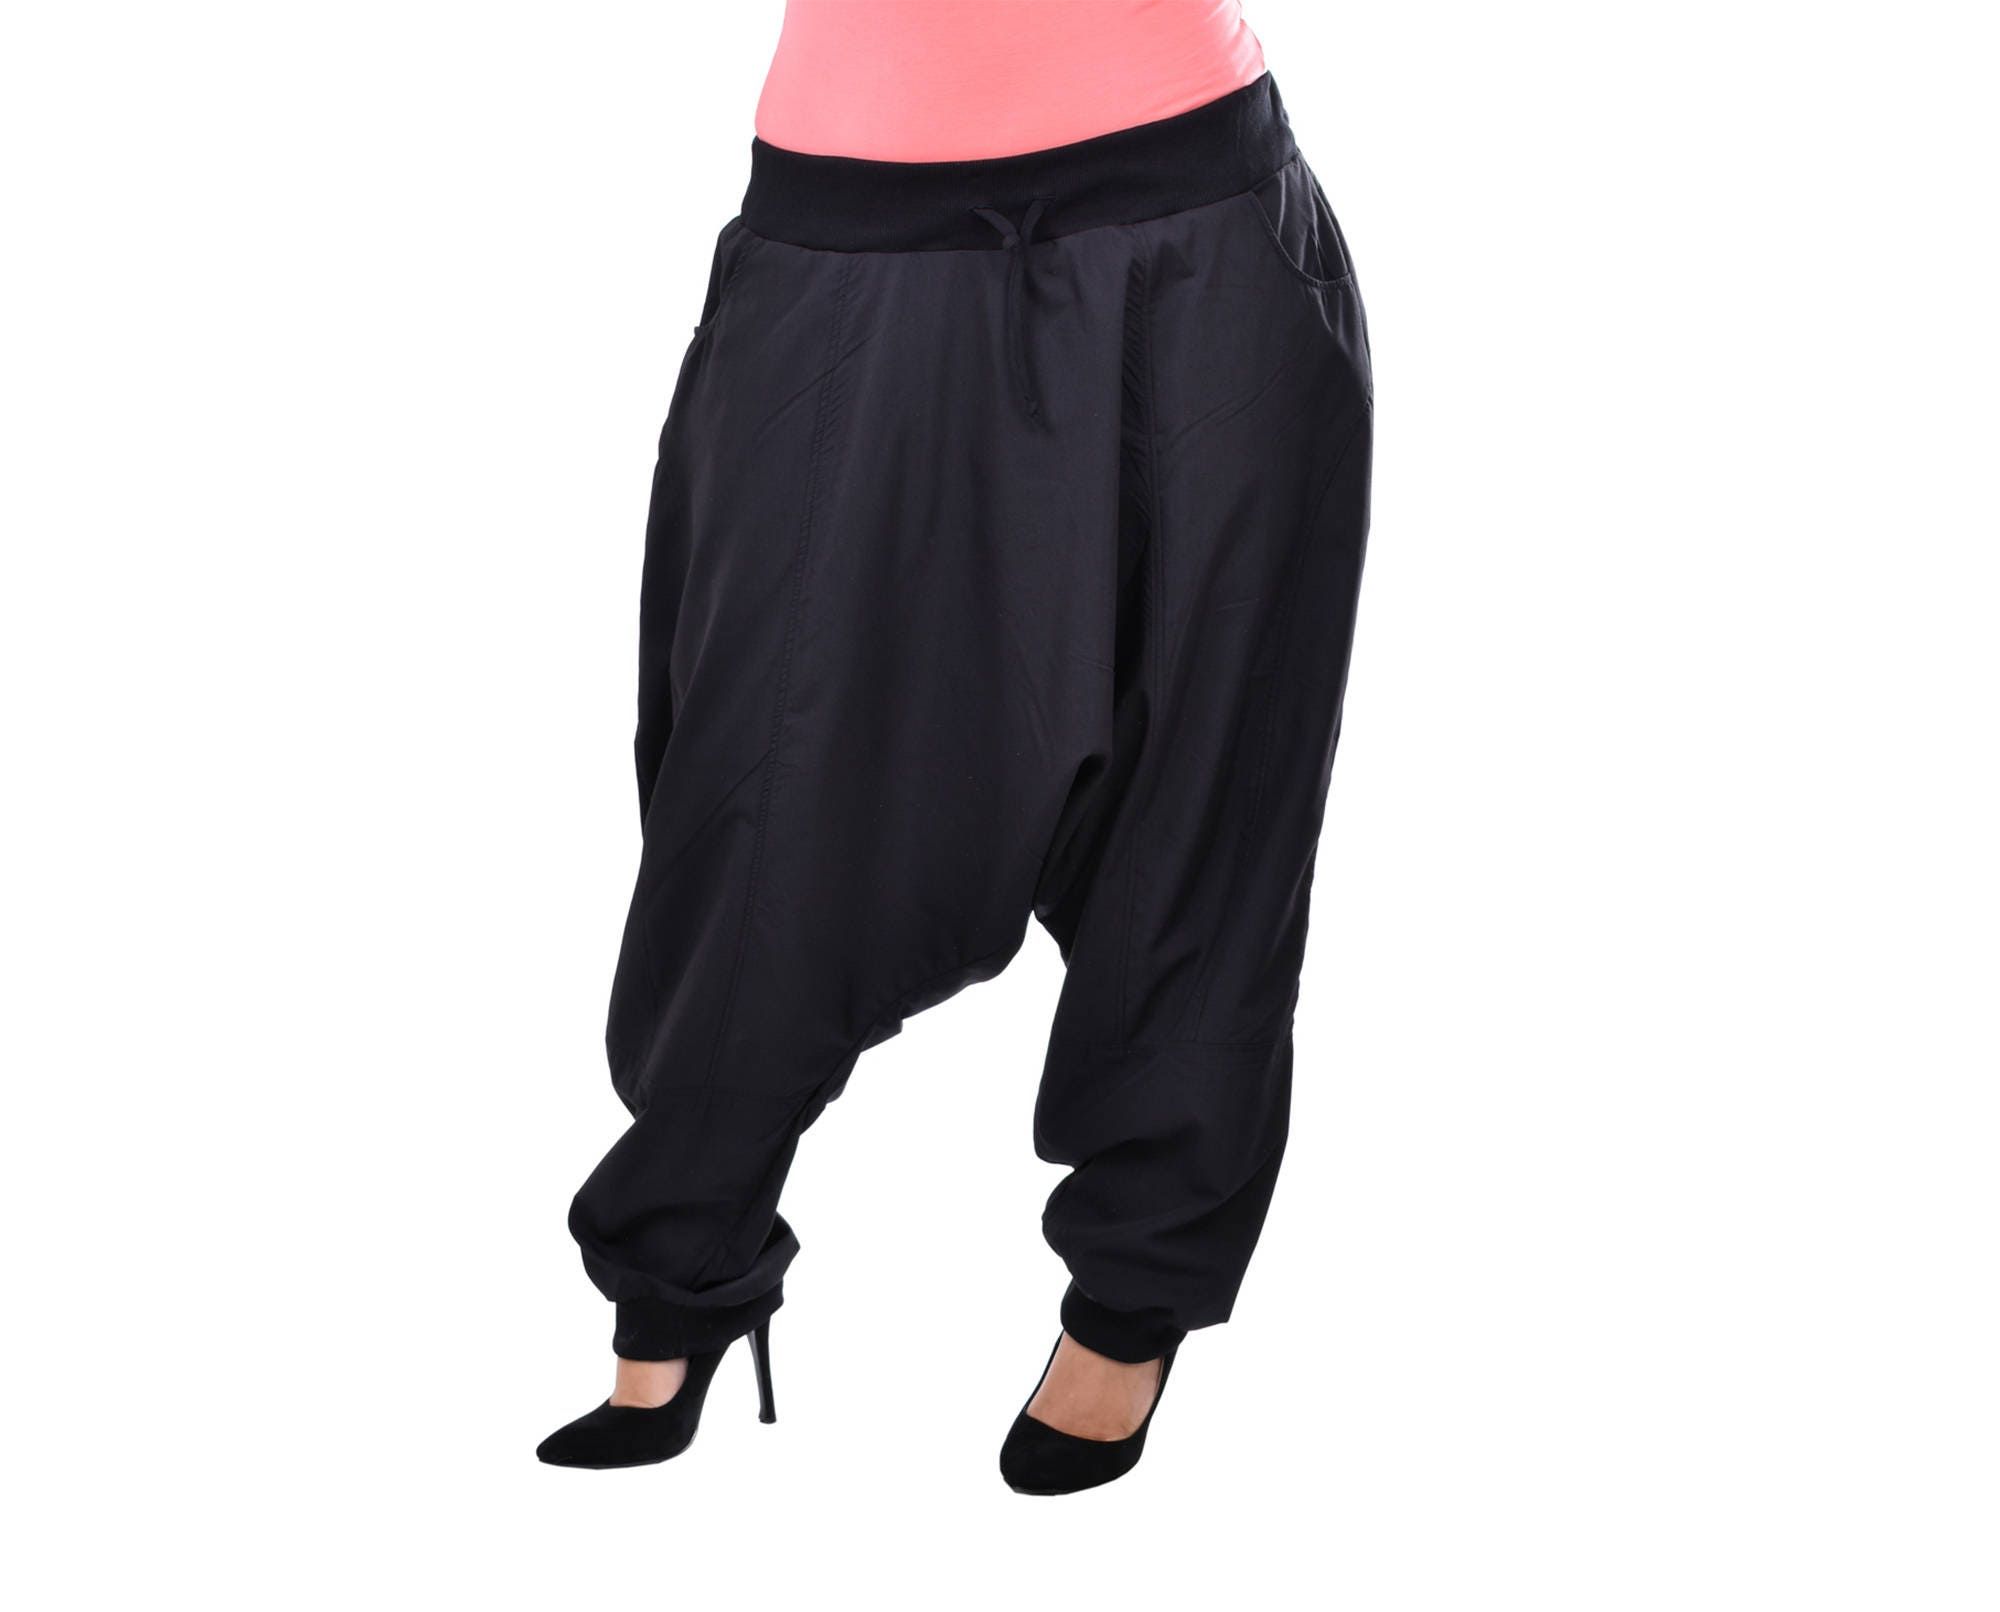 Black Drop Crotch Pants Black Harem Plus Size Maxi Pants | Etsy